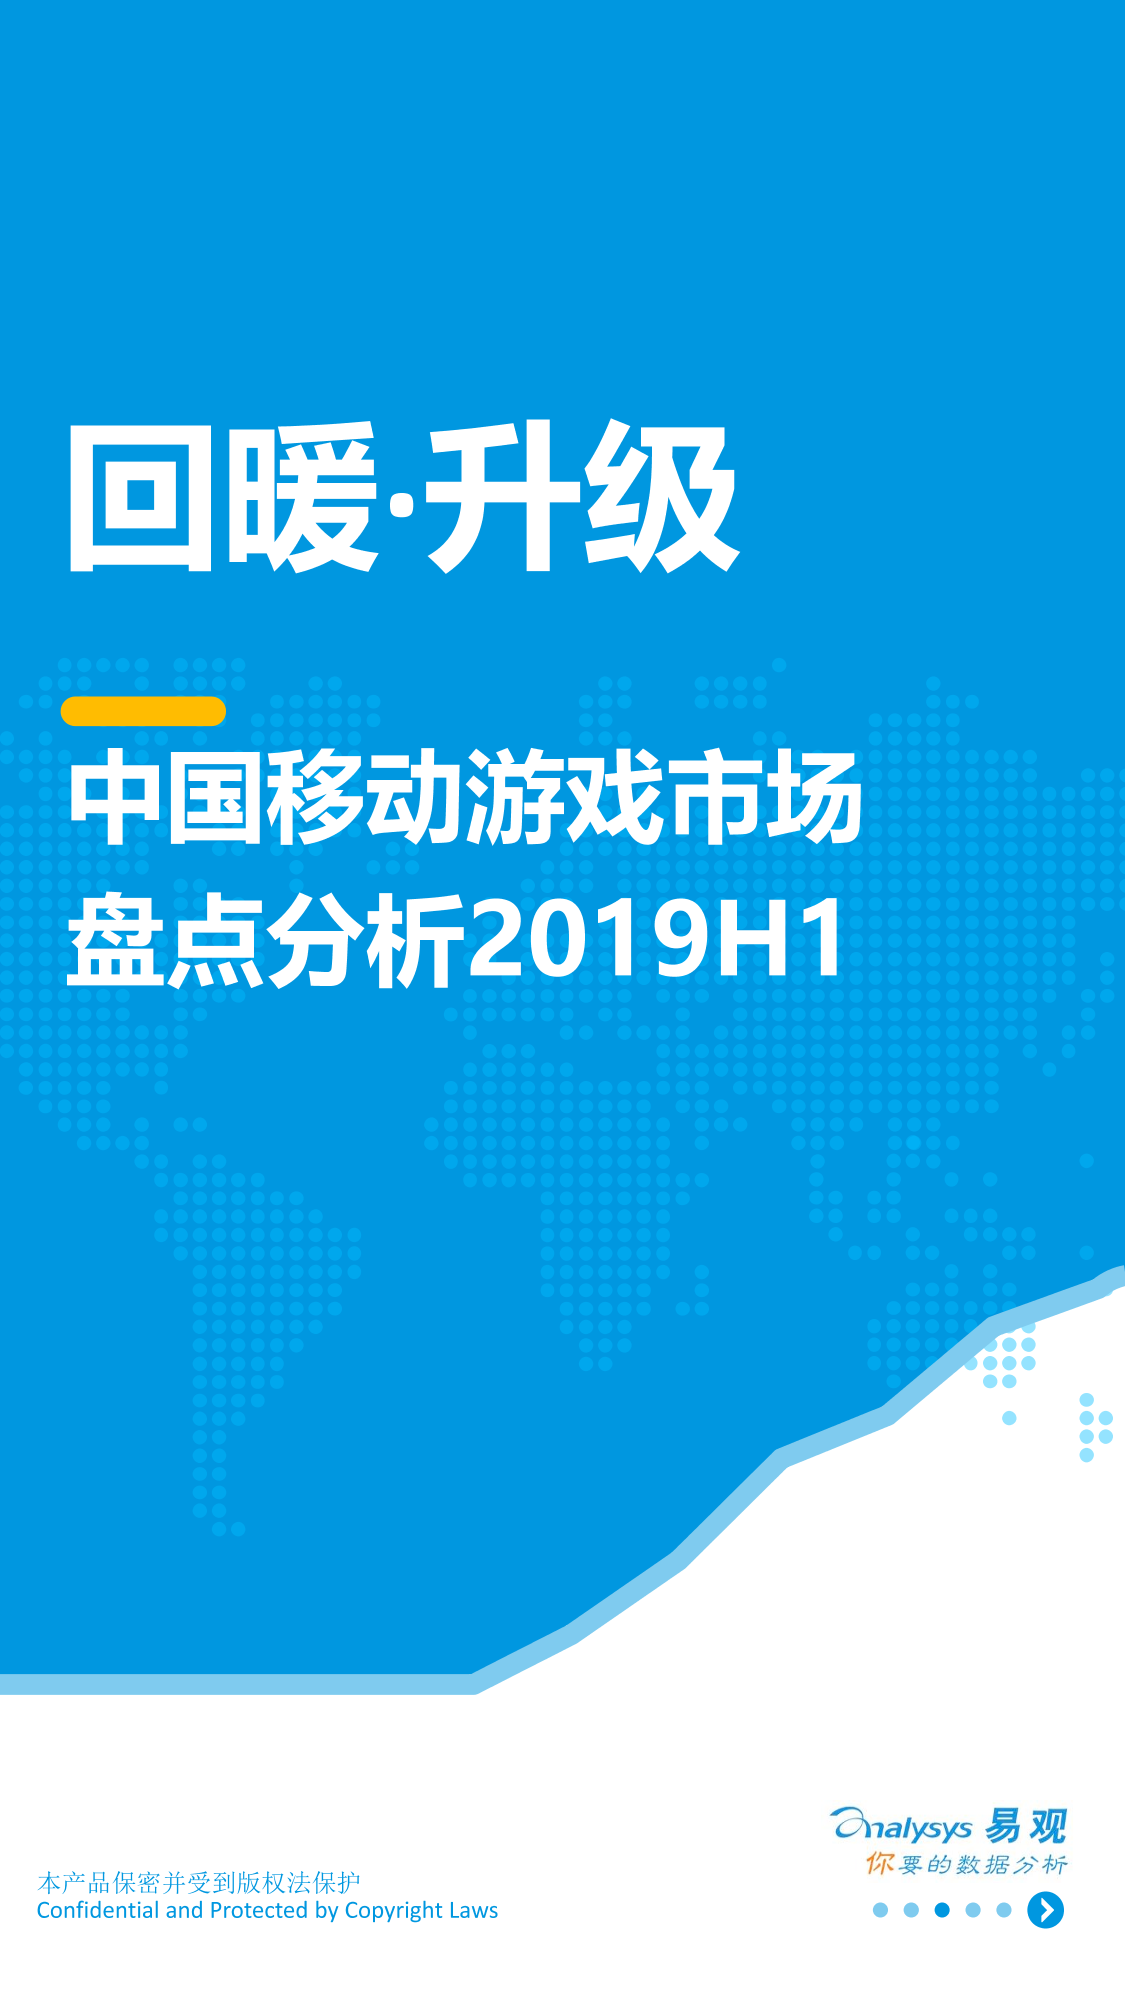 易观-中国移动游戏市场盘点分析2019H1-2019.8.15-19页易观-中国移动游戏市场盘点分析2019H1-2019.8.15-19页_1.png